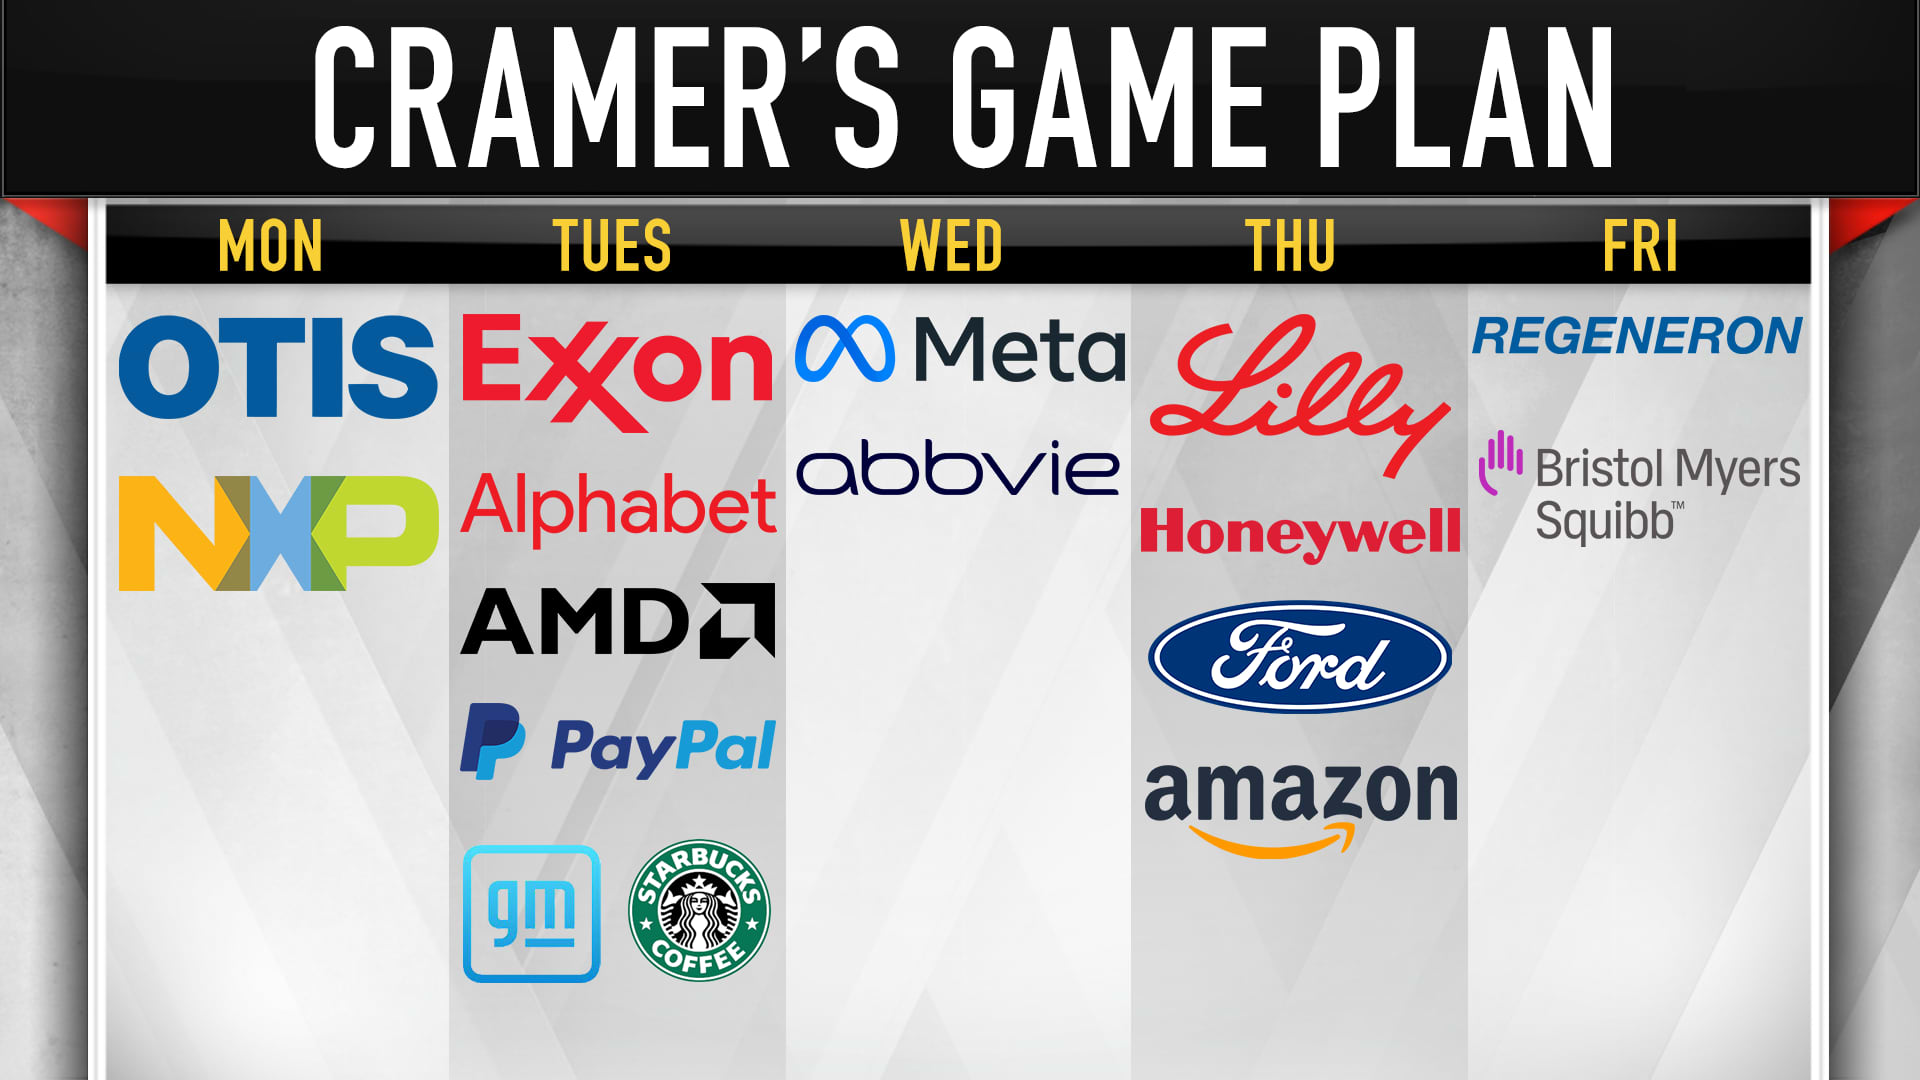 Jim Cramer's game plan for the trading week that begins Jan. 31.